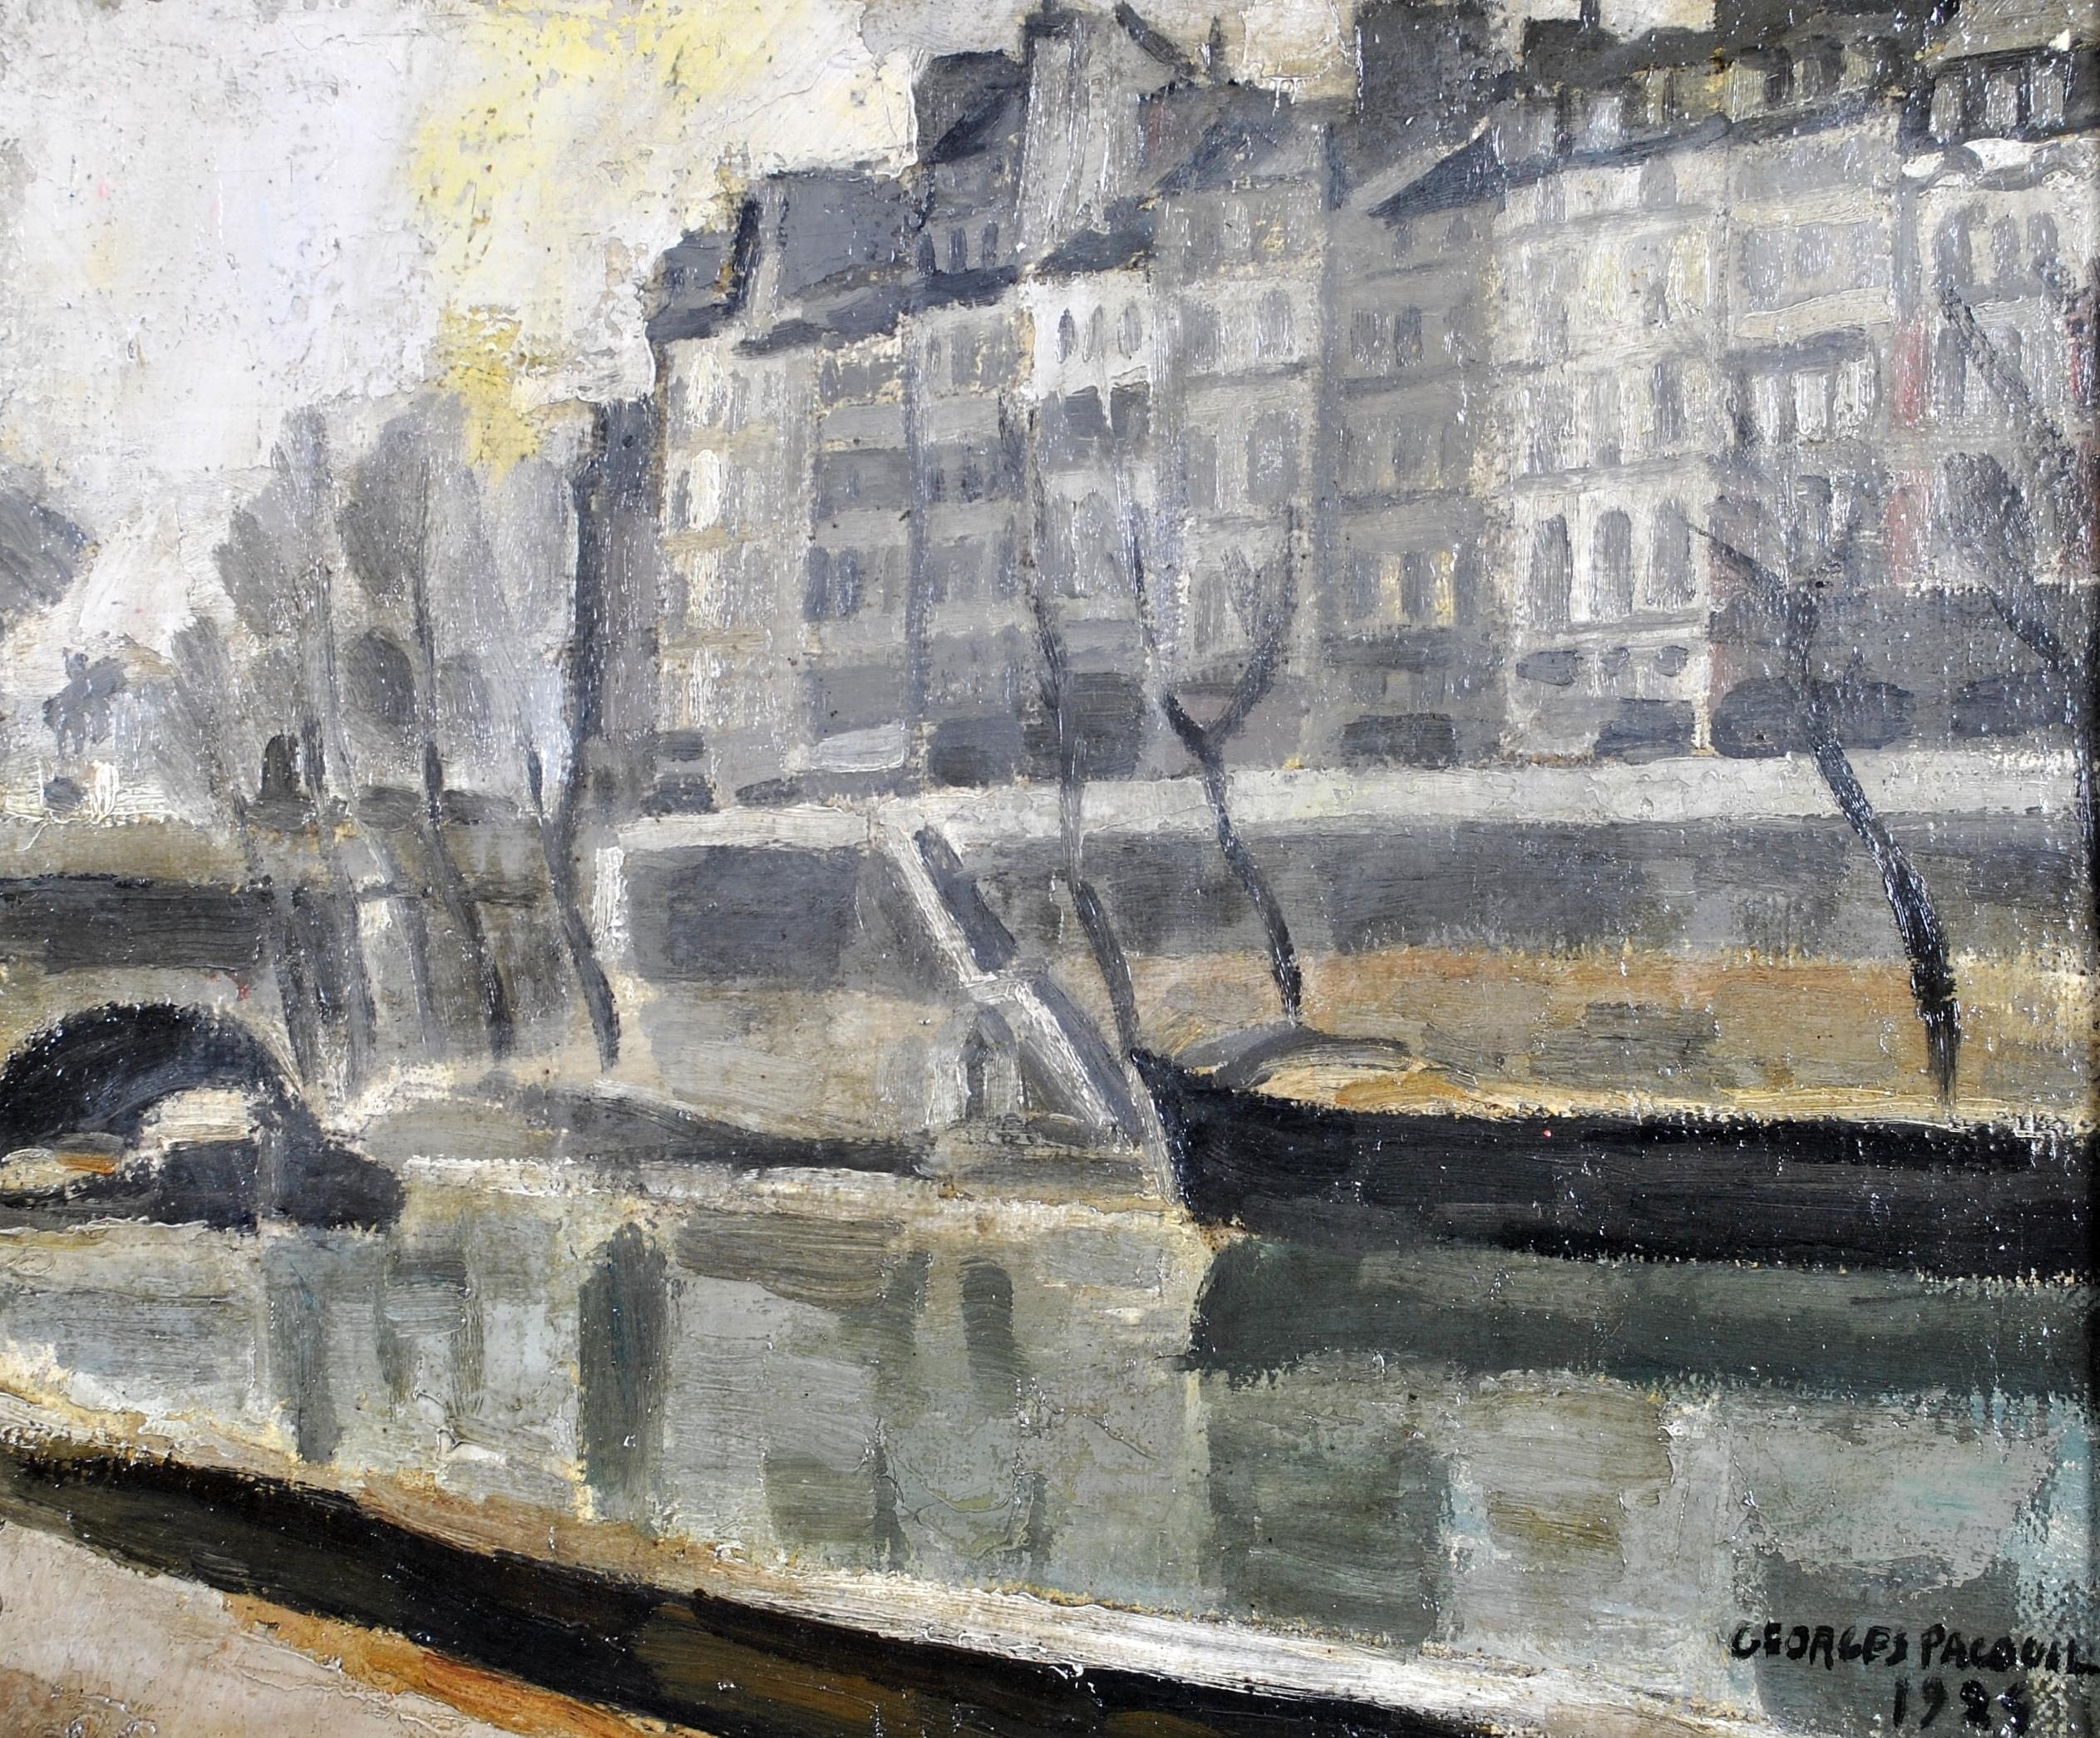 La Seine - Paysage post-impressionniste français - Peinture à l'huile sur toile - Painting de Georges Pacouil